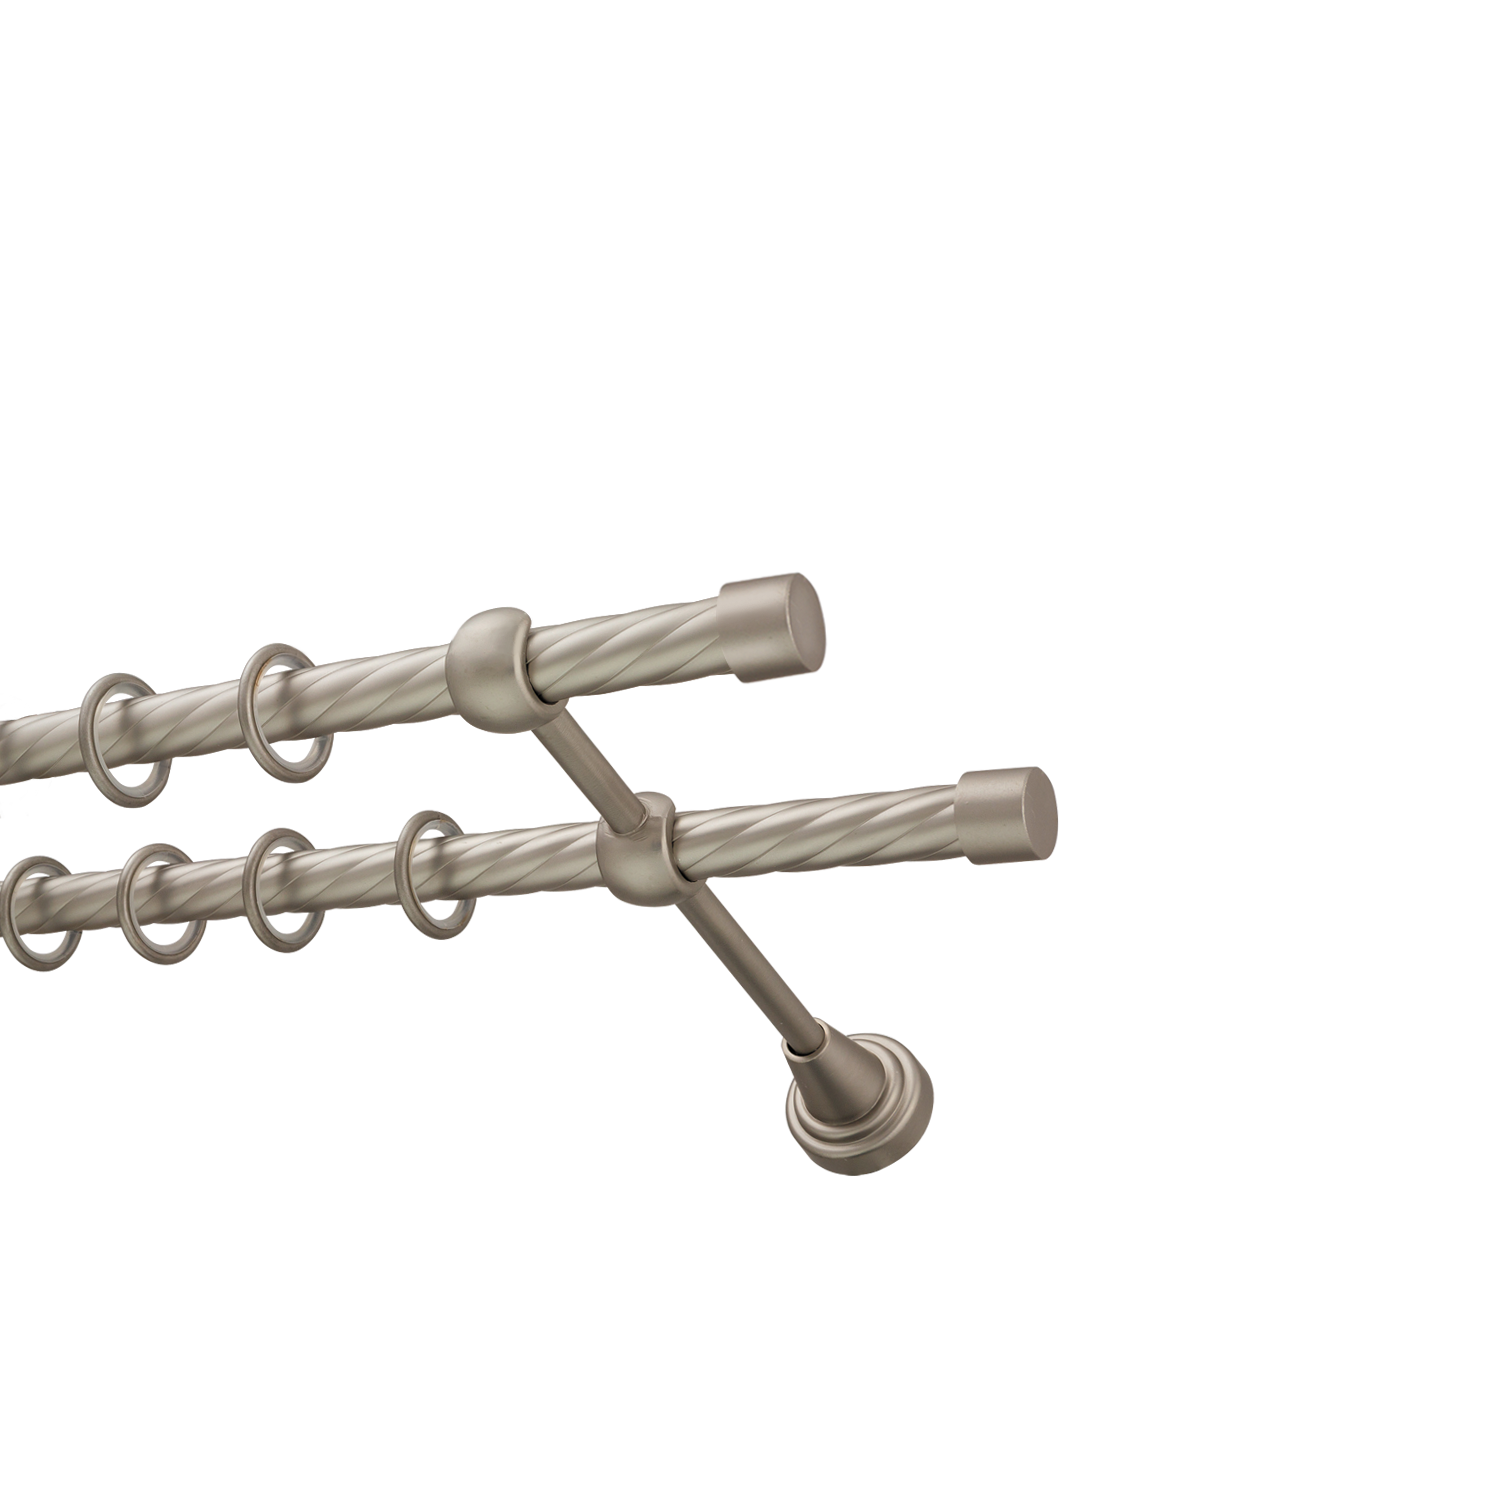 Металлический карниз для штор Заглушка, двухрядный 16/16 мм, сталь, витая штанга, длина 140 см - фото Wikidecor.ru